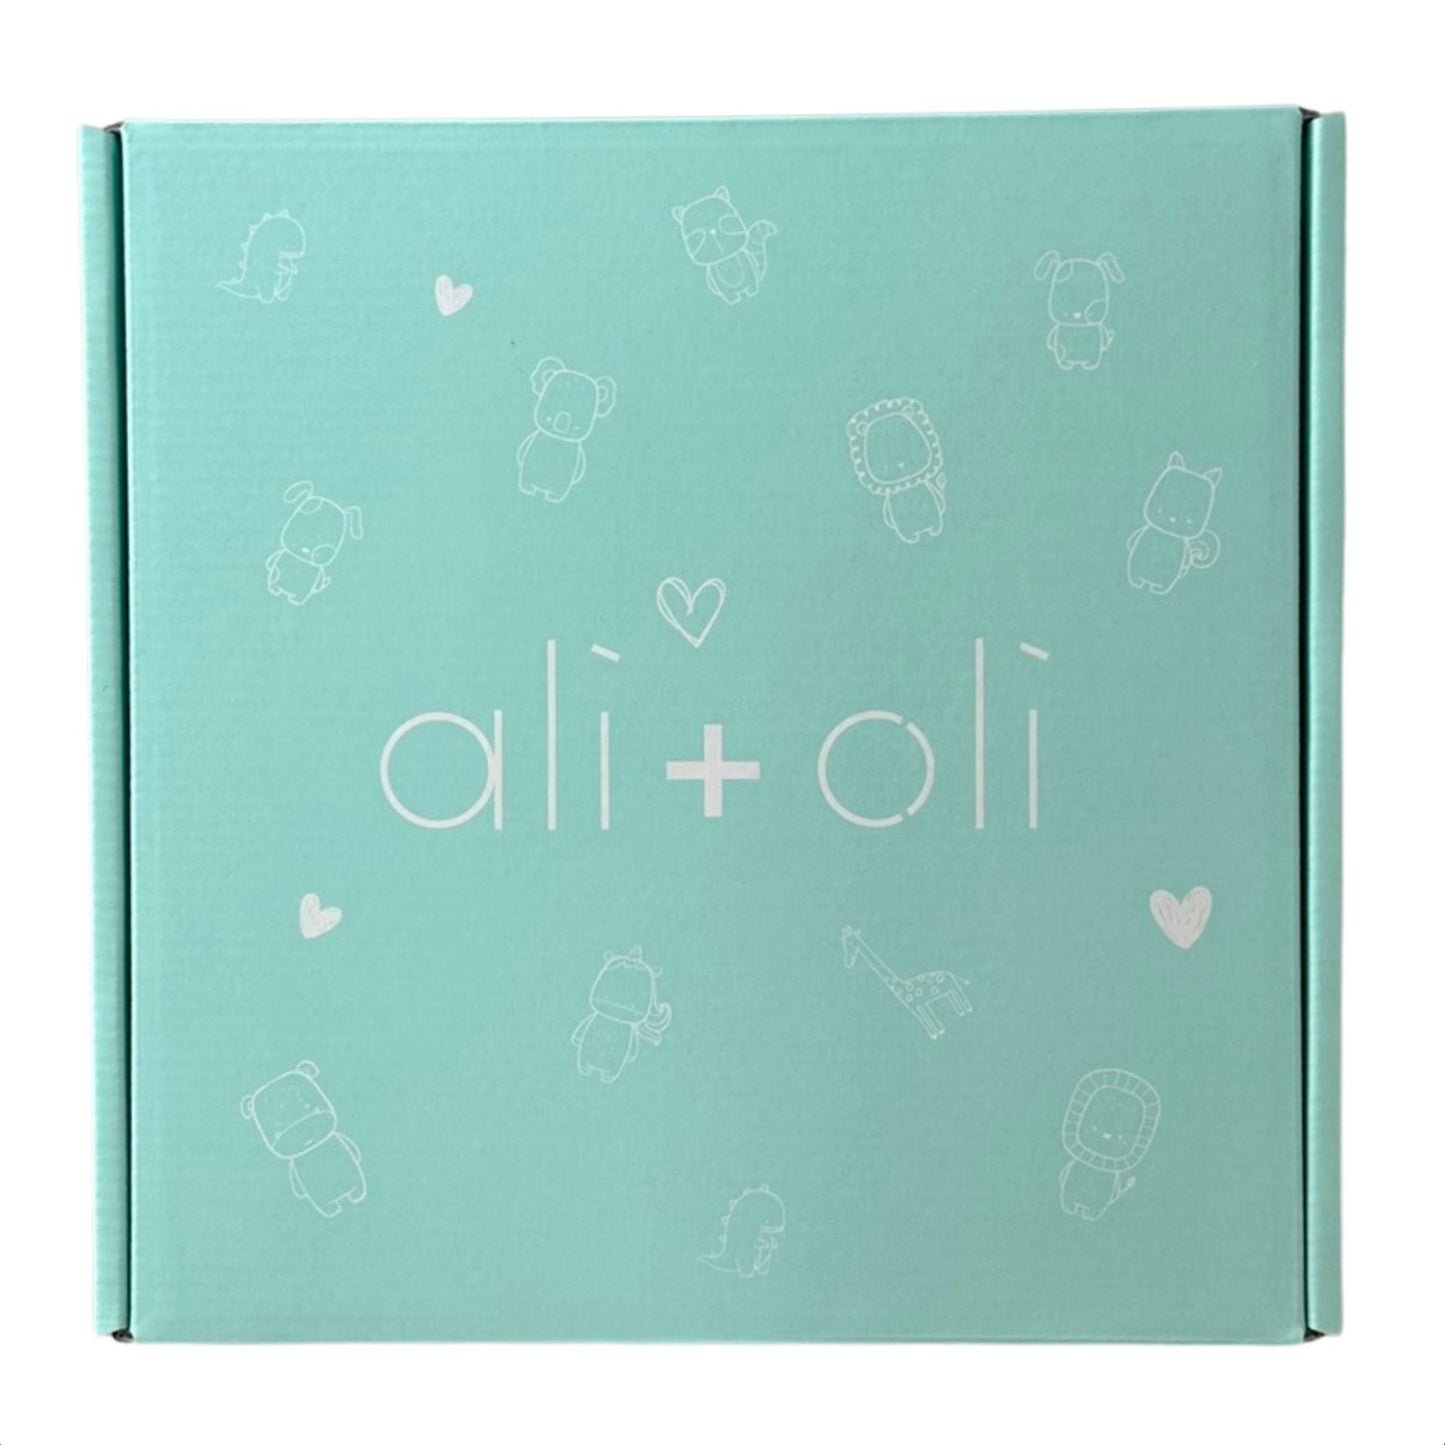 Ali+Oli Baby Gift Box - Tan Tones